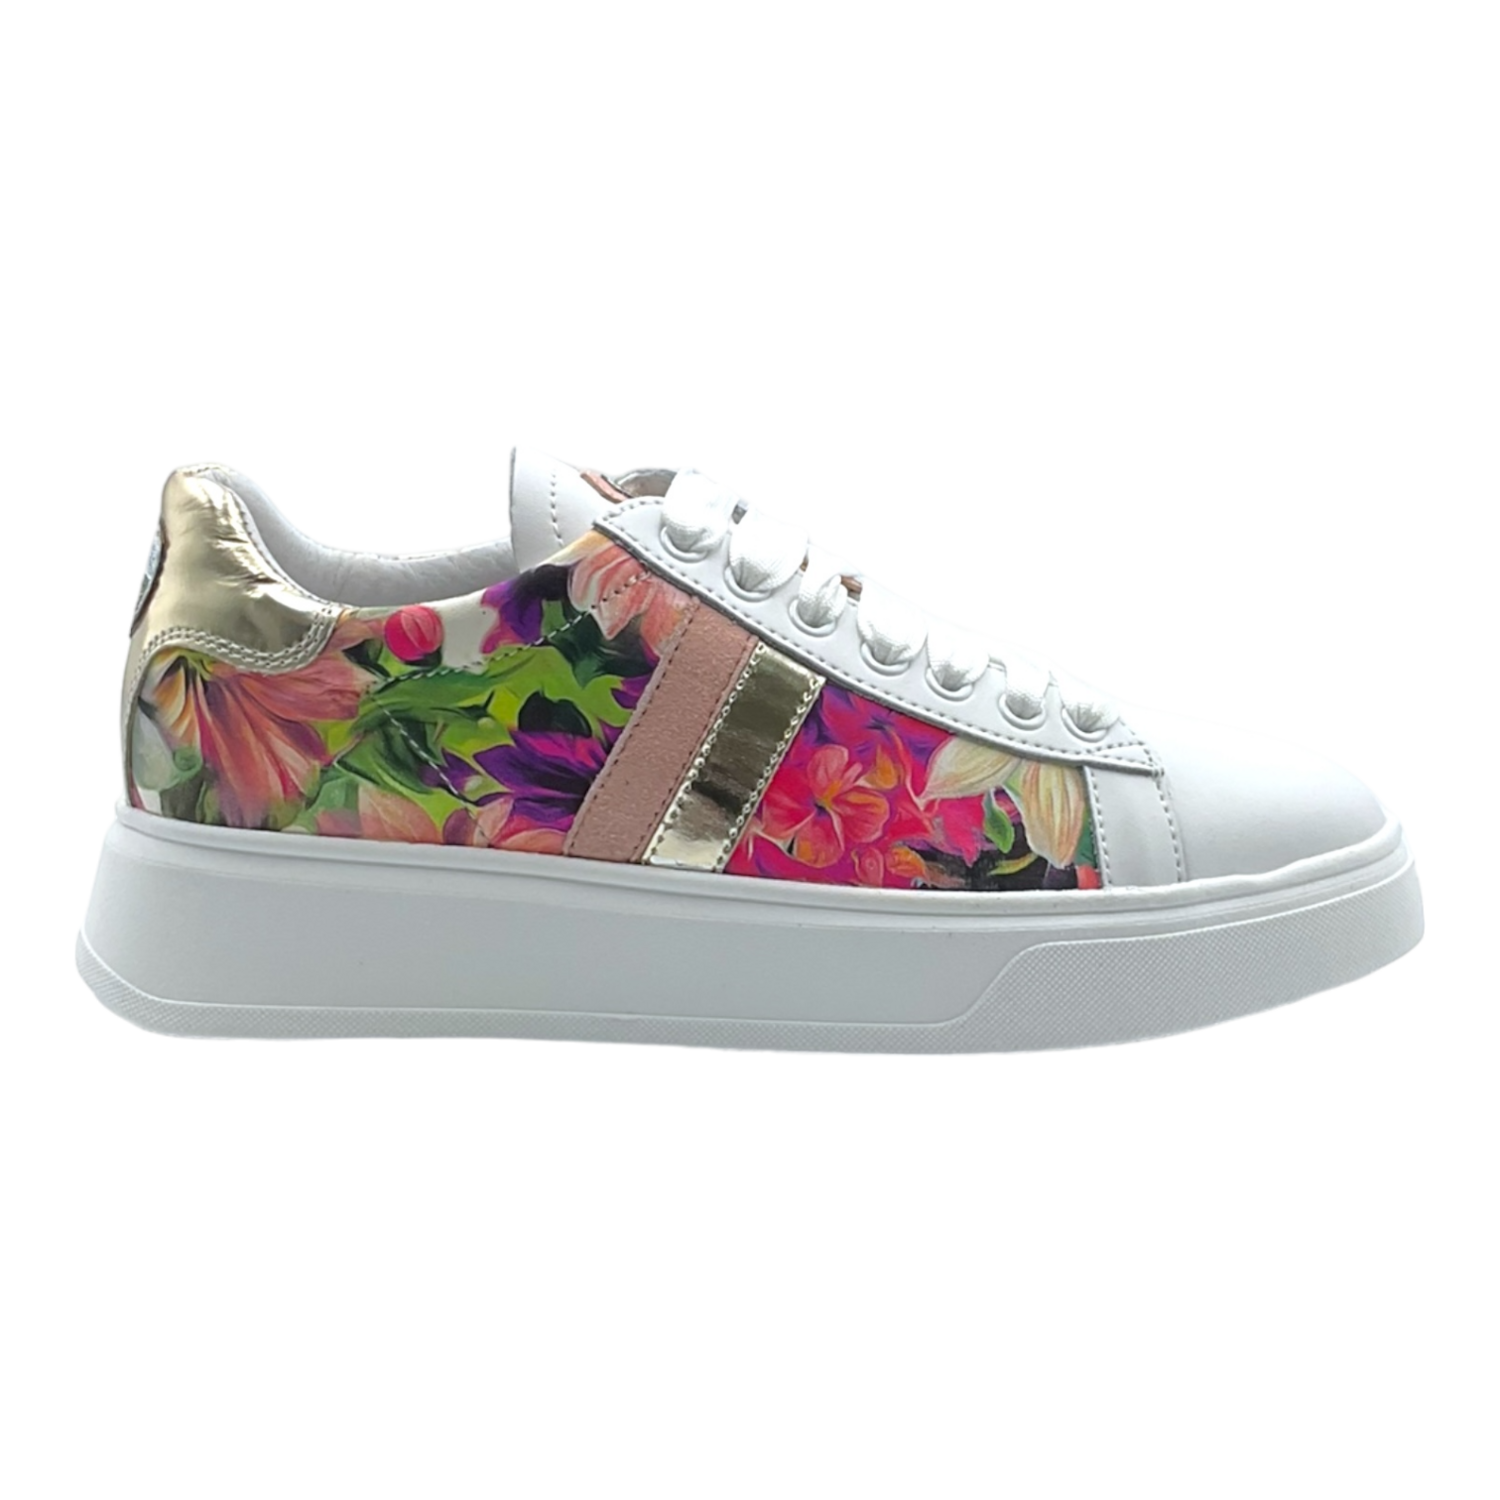 NIS Sneakers pink flowers